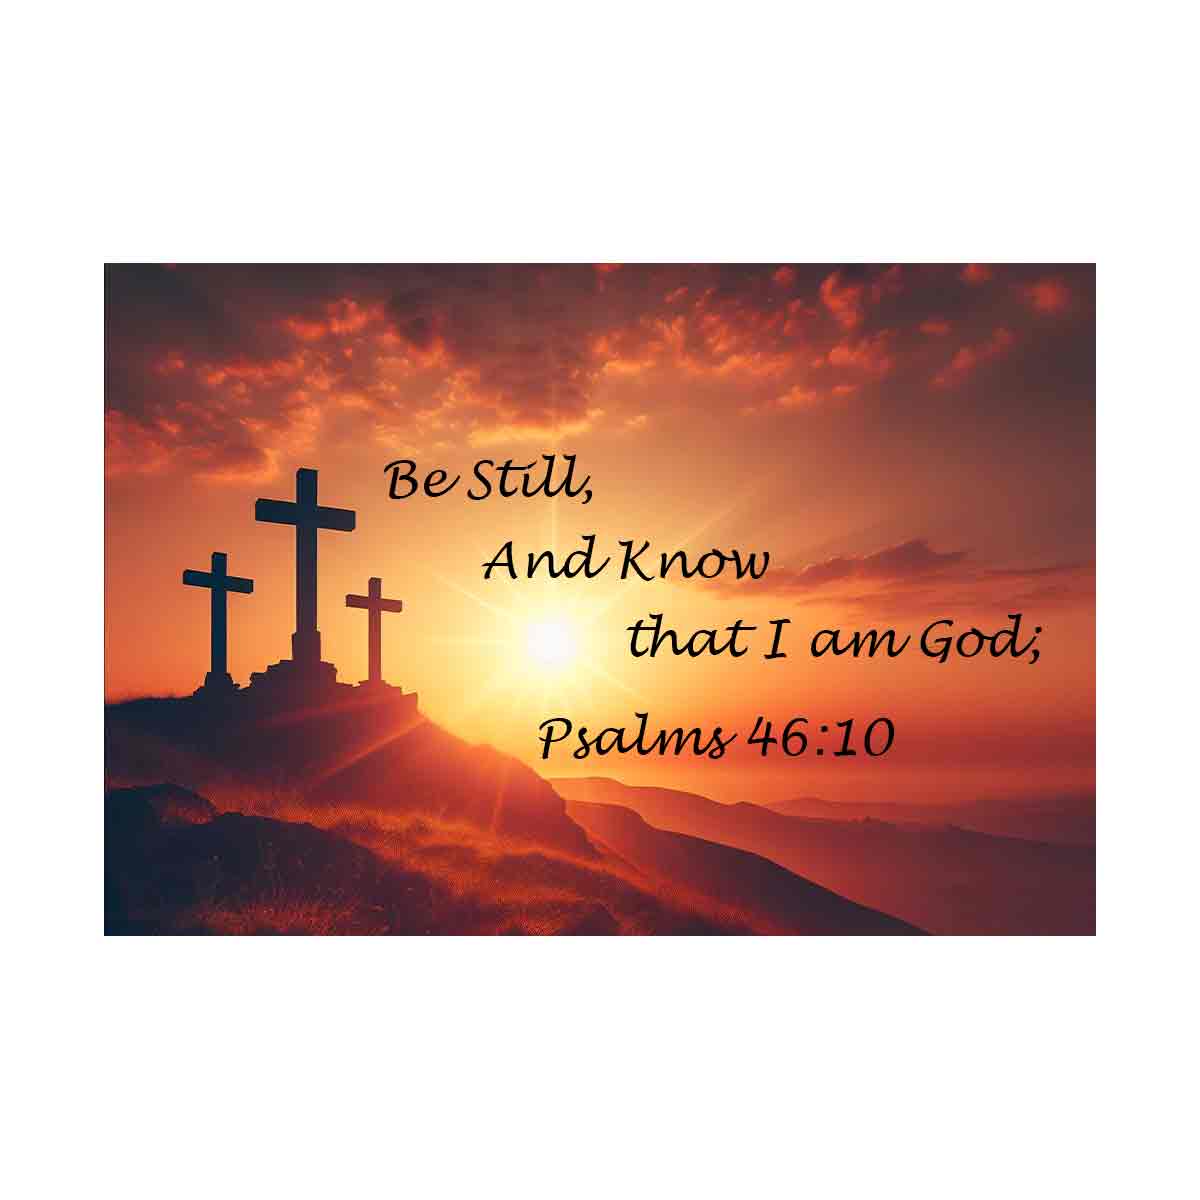 Be still - Psalms 46:10